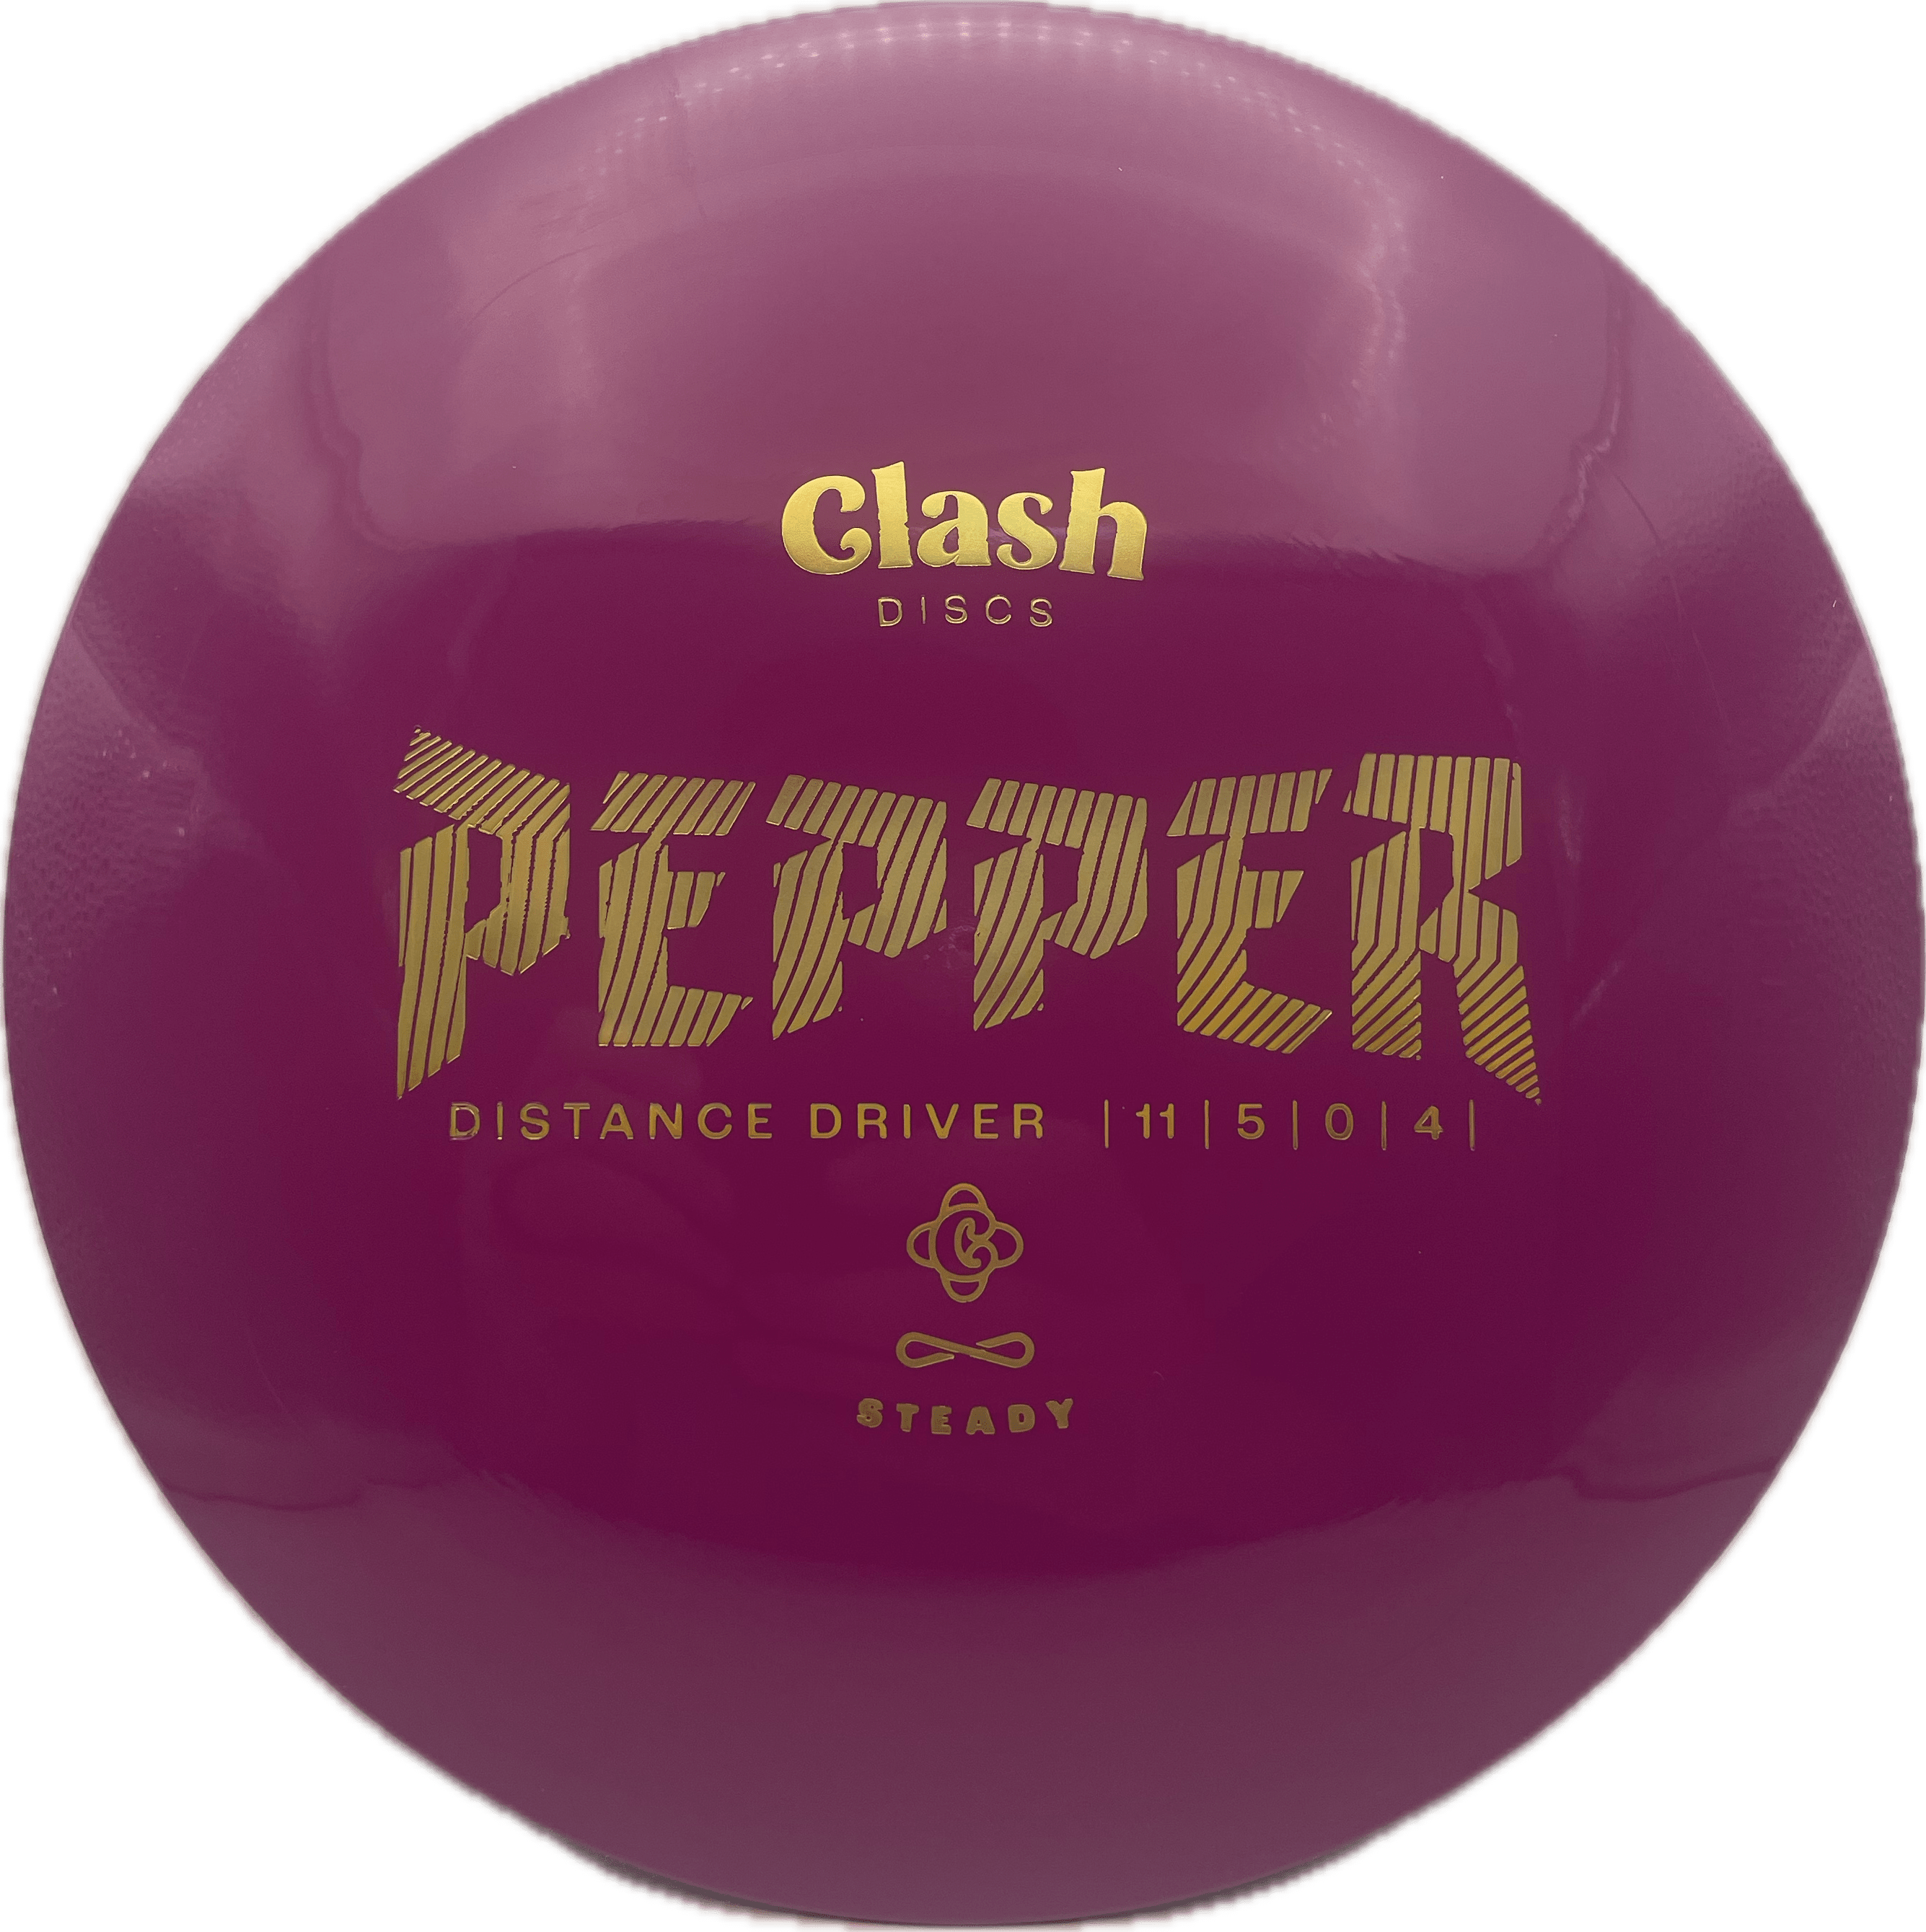 Clash Disc Clash Pepper, Steady, 175-176, Purple, Gold Metallic